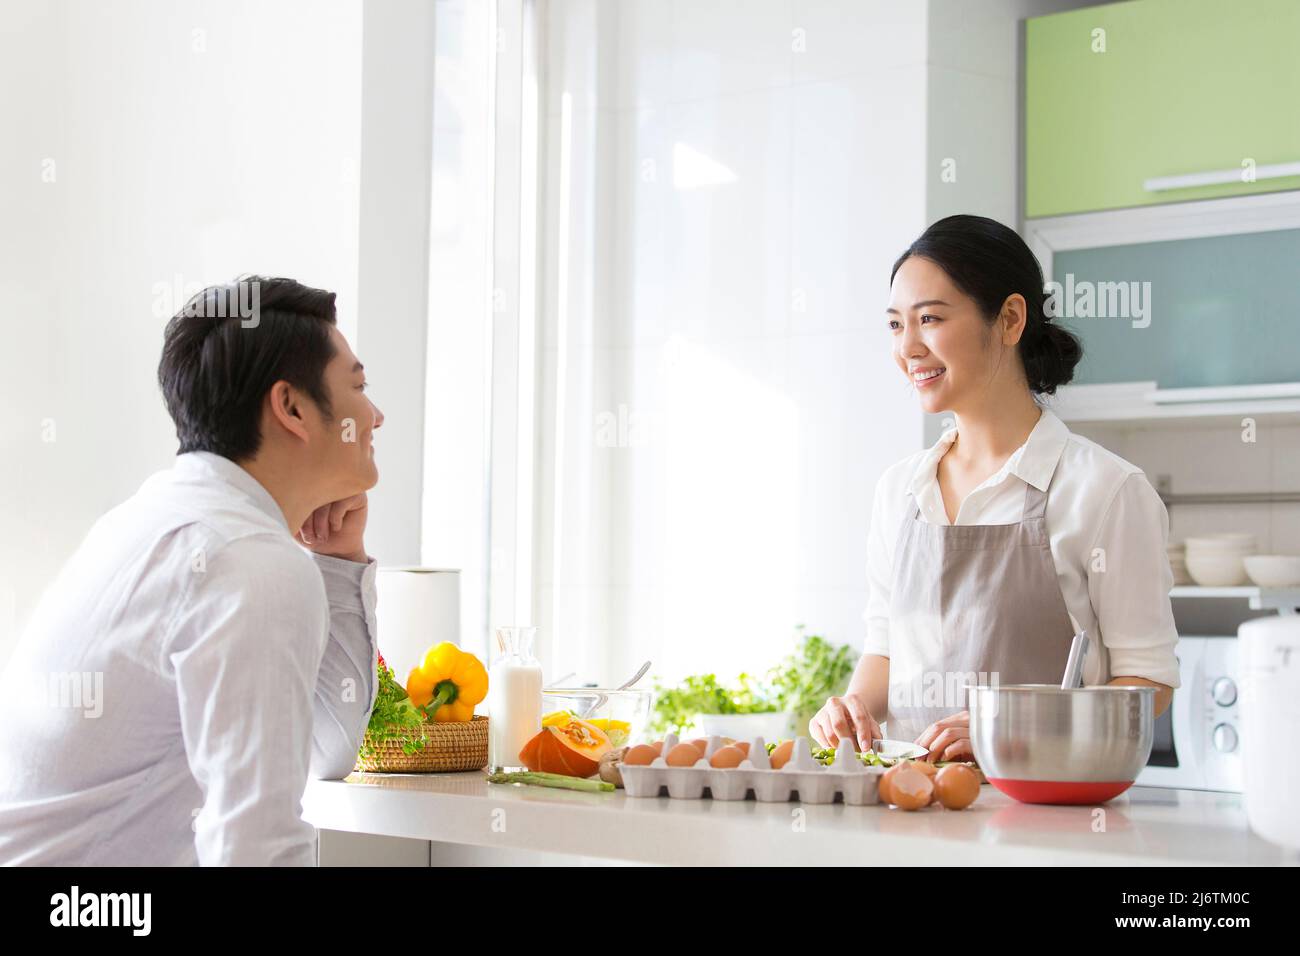 In der Familienküche kocht ein junges Paar gerne zusammen. Sie schauten einander tief in die Augen - Stockfoto Stockfoto